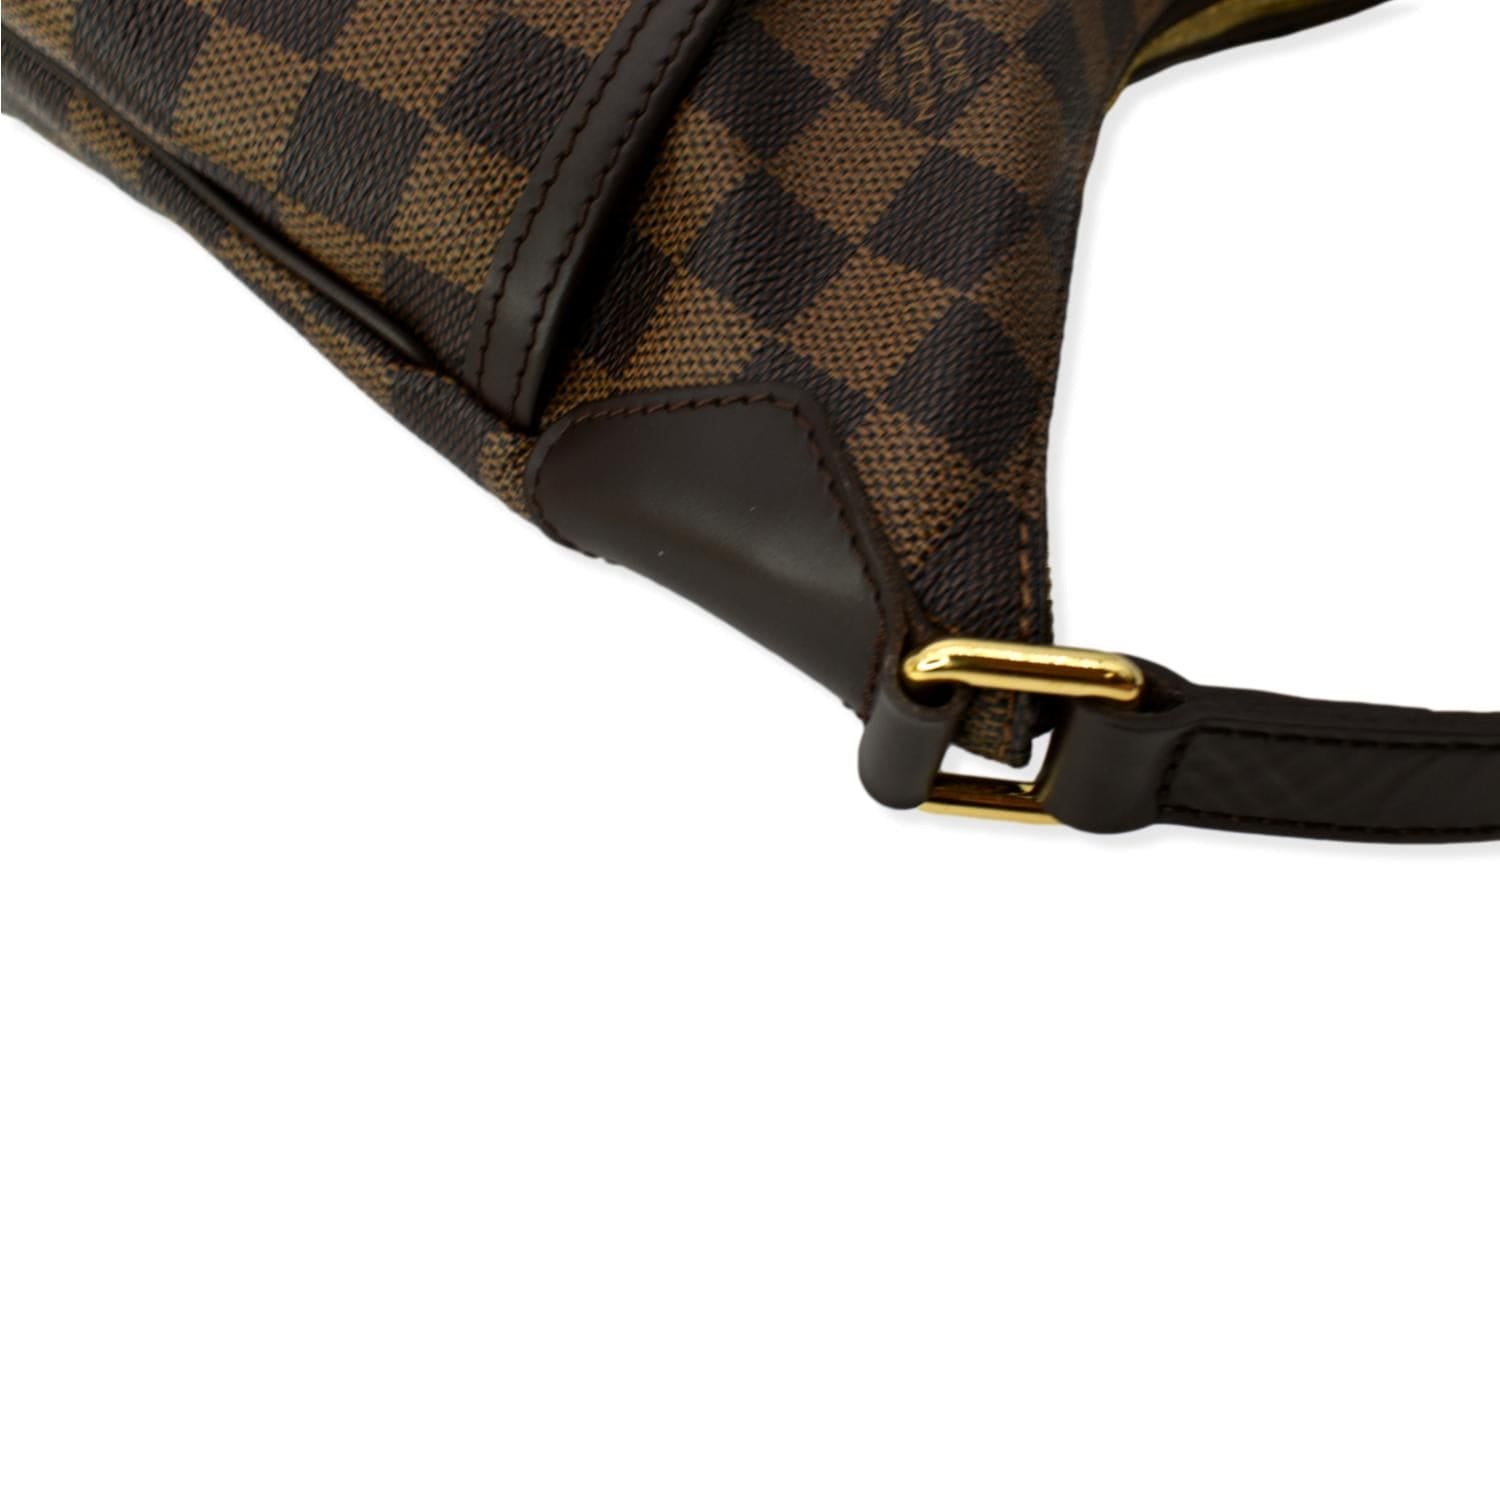 Louis Vuitton Bloomsbury Handbag Damier PM Brown 23048570